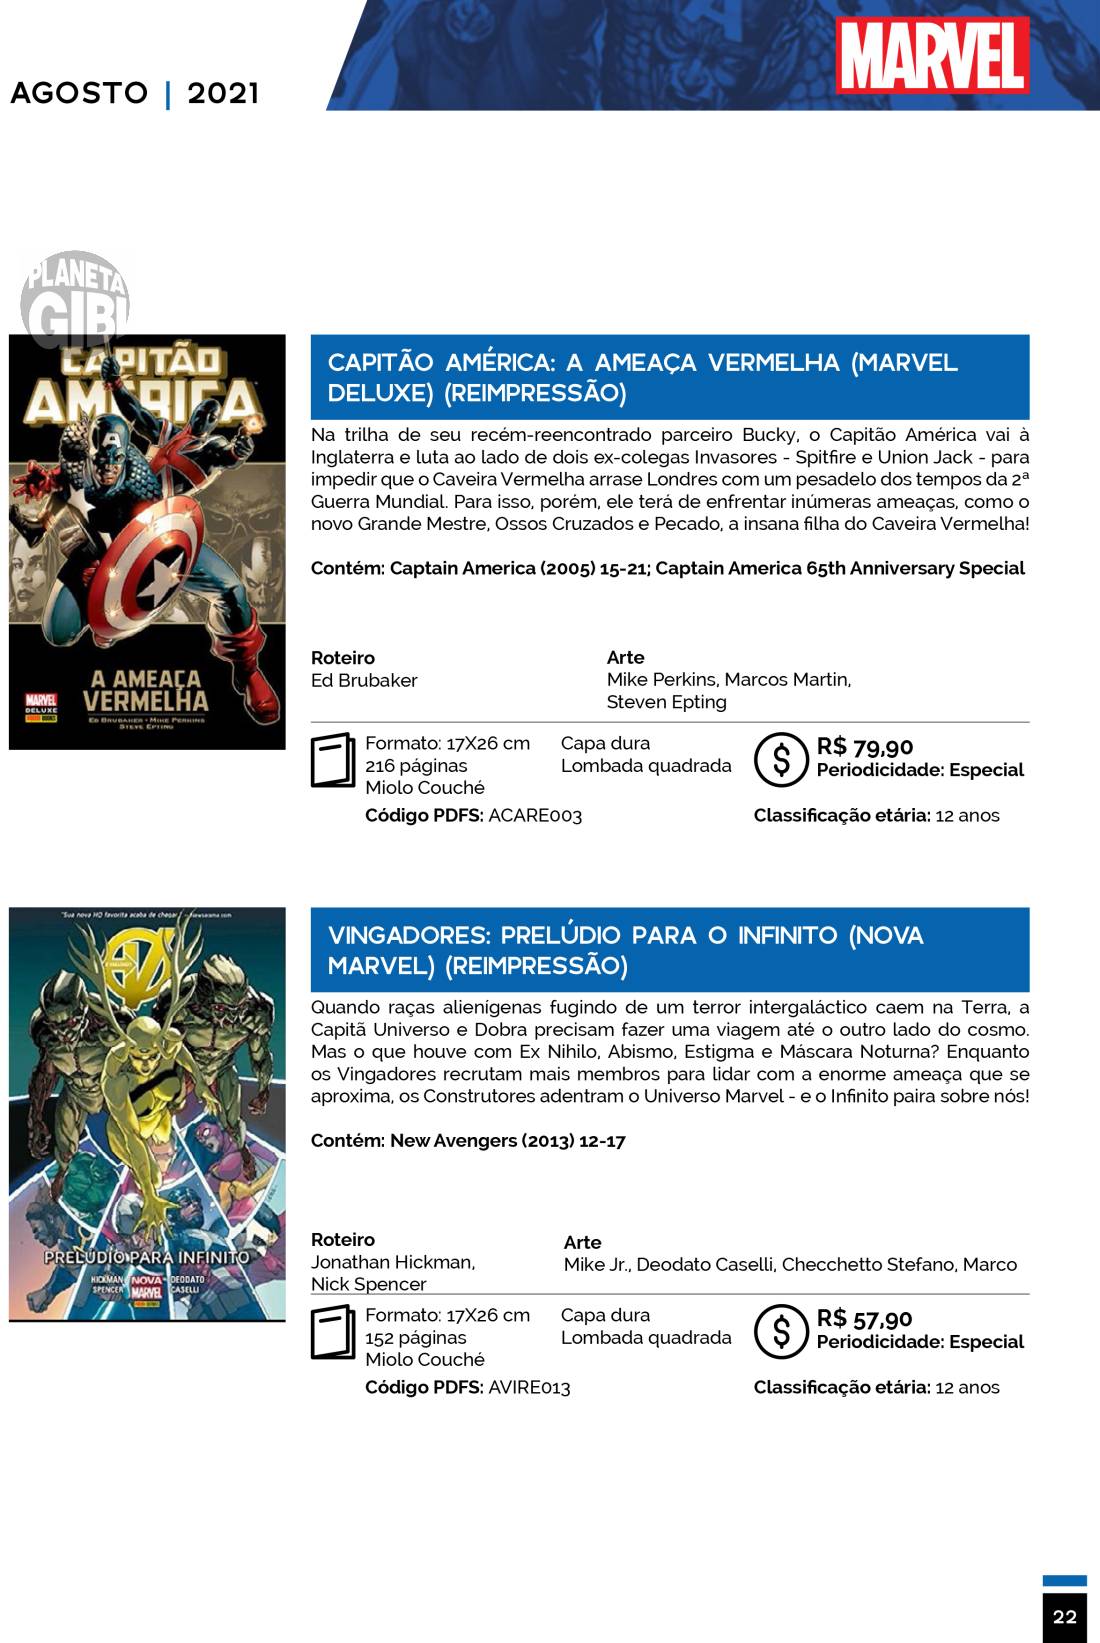 6 - Checklist Marvel/Panini (Julho/2020 - pág.09) - Página 9 Catalogo-Julho-Agosto-22